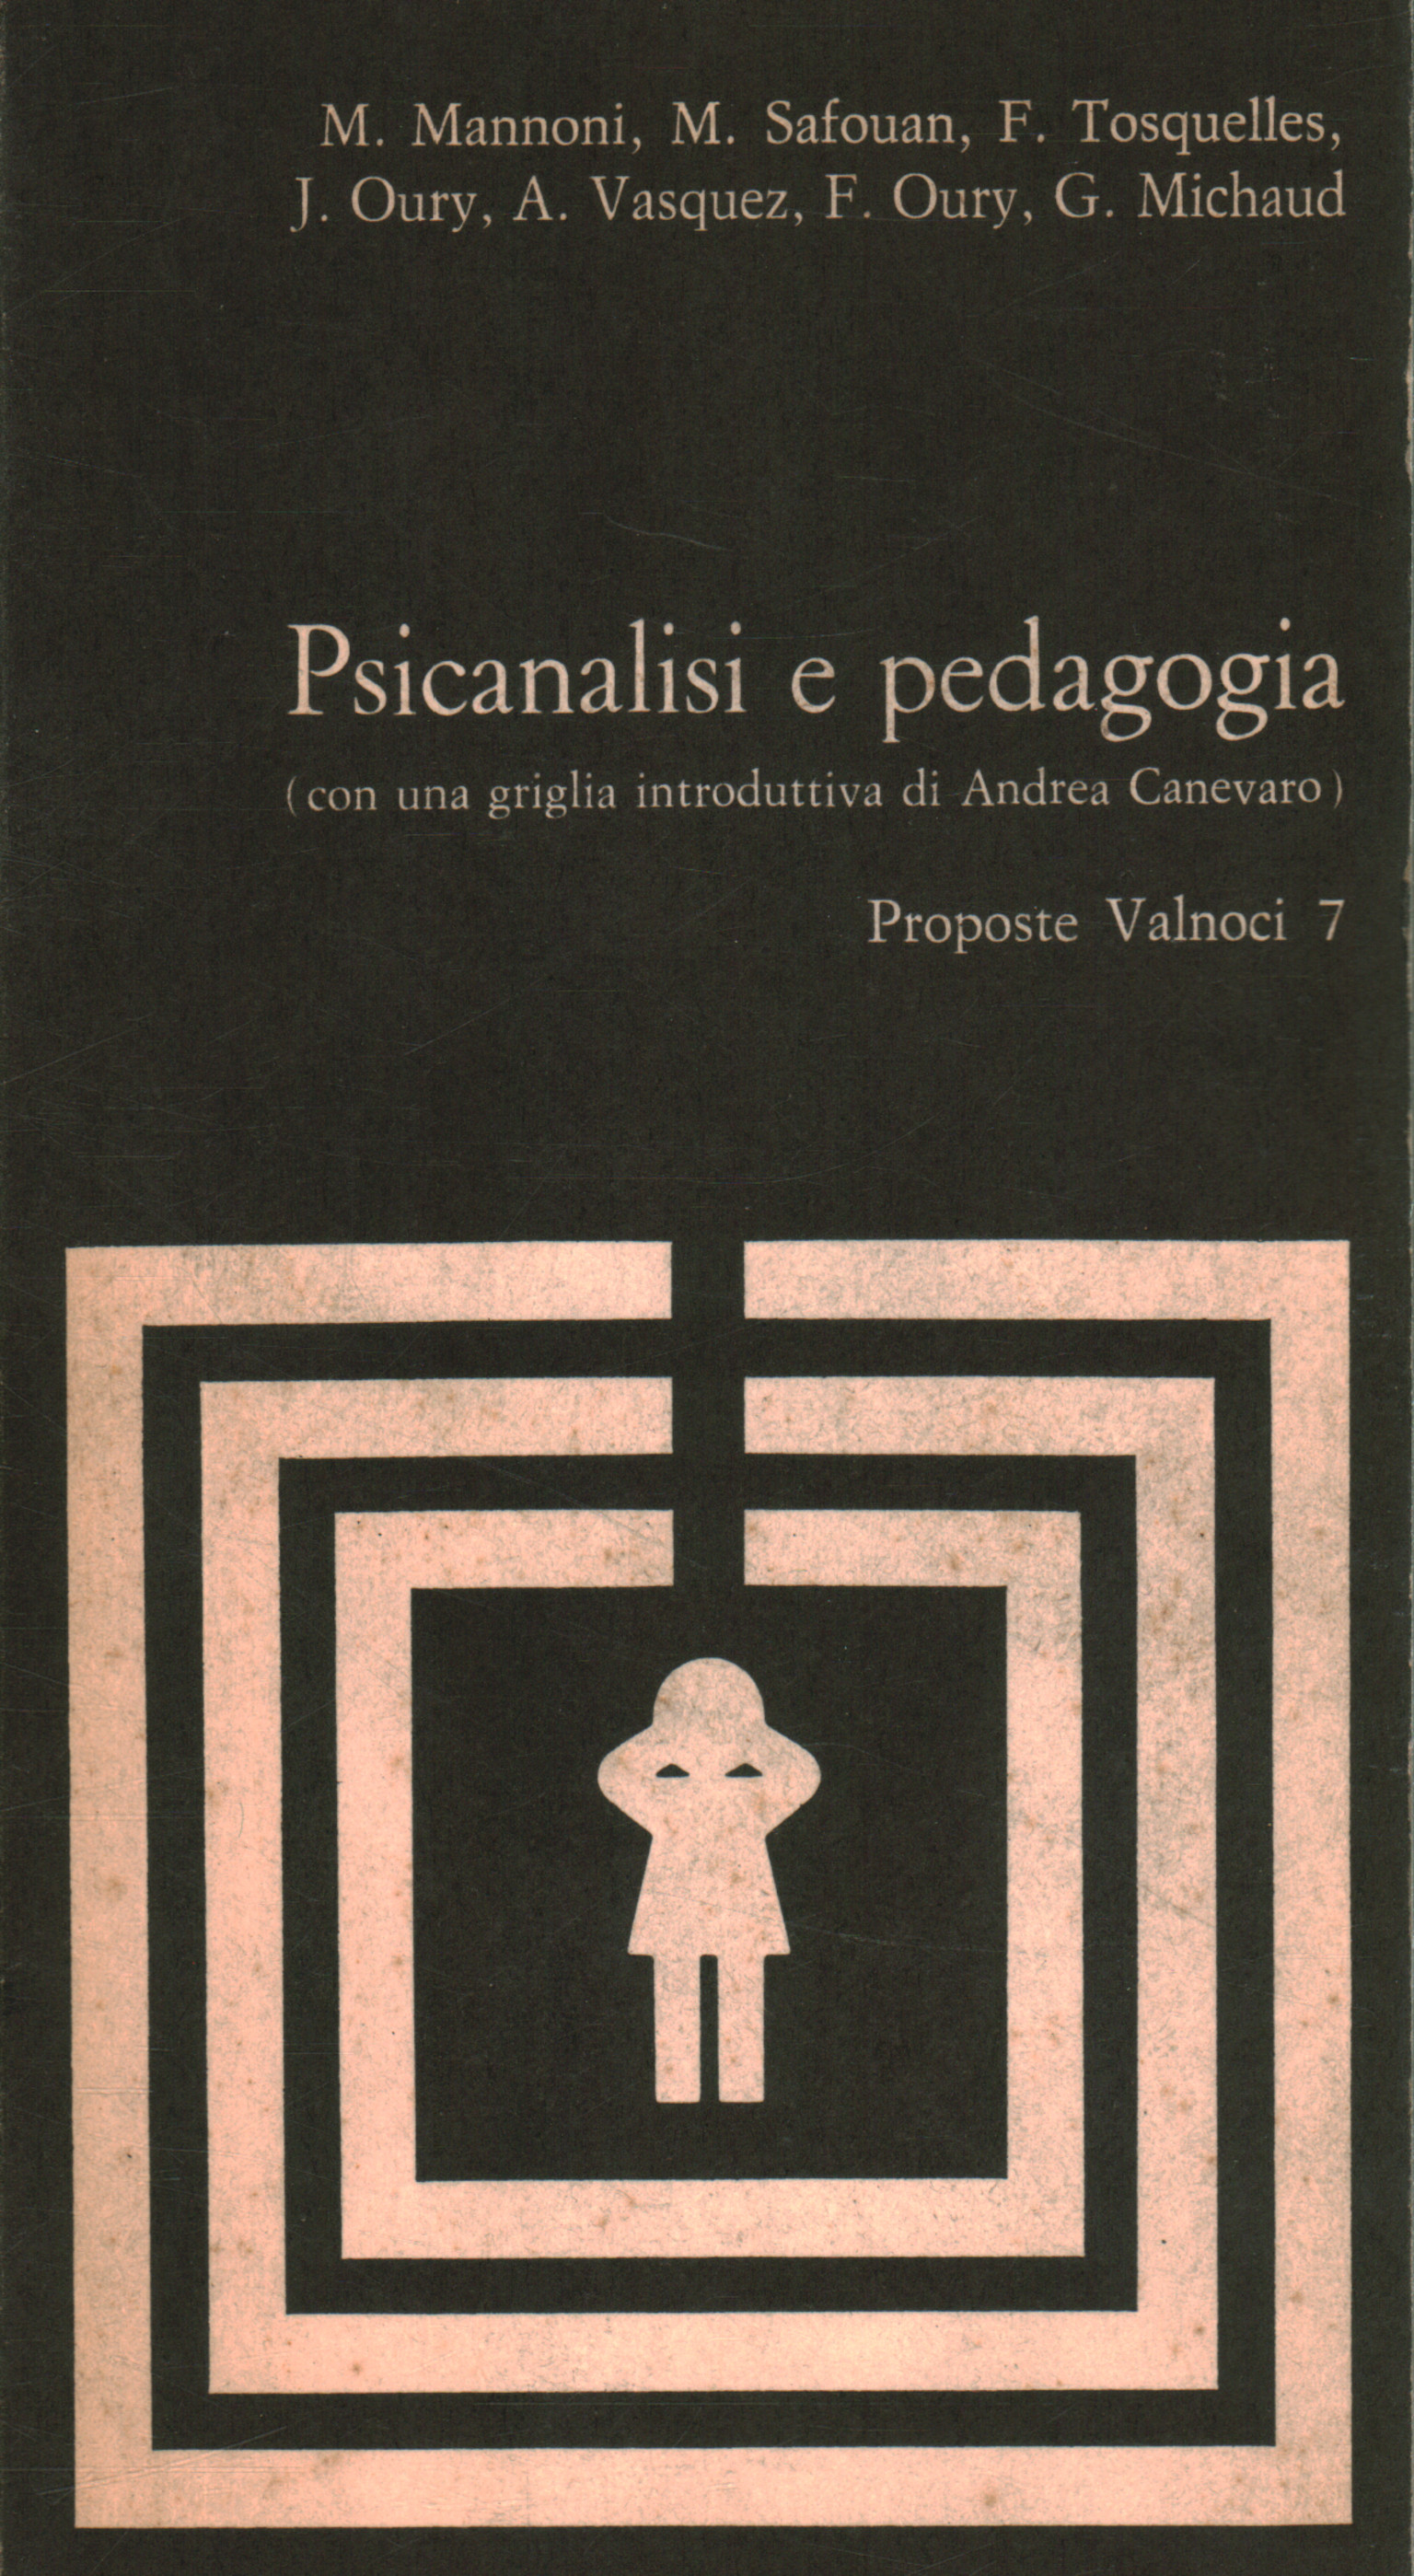 Psychoanalysis and pedagogy